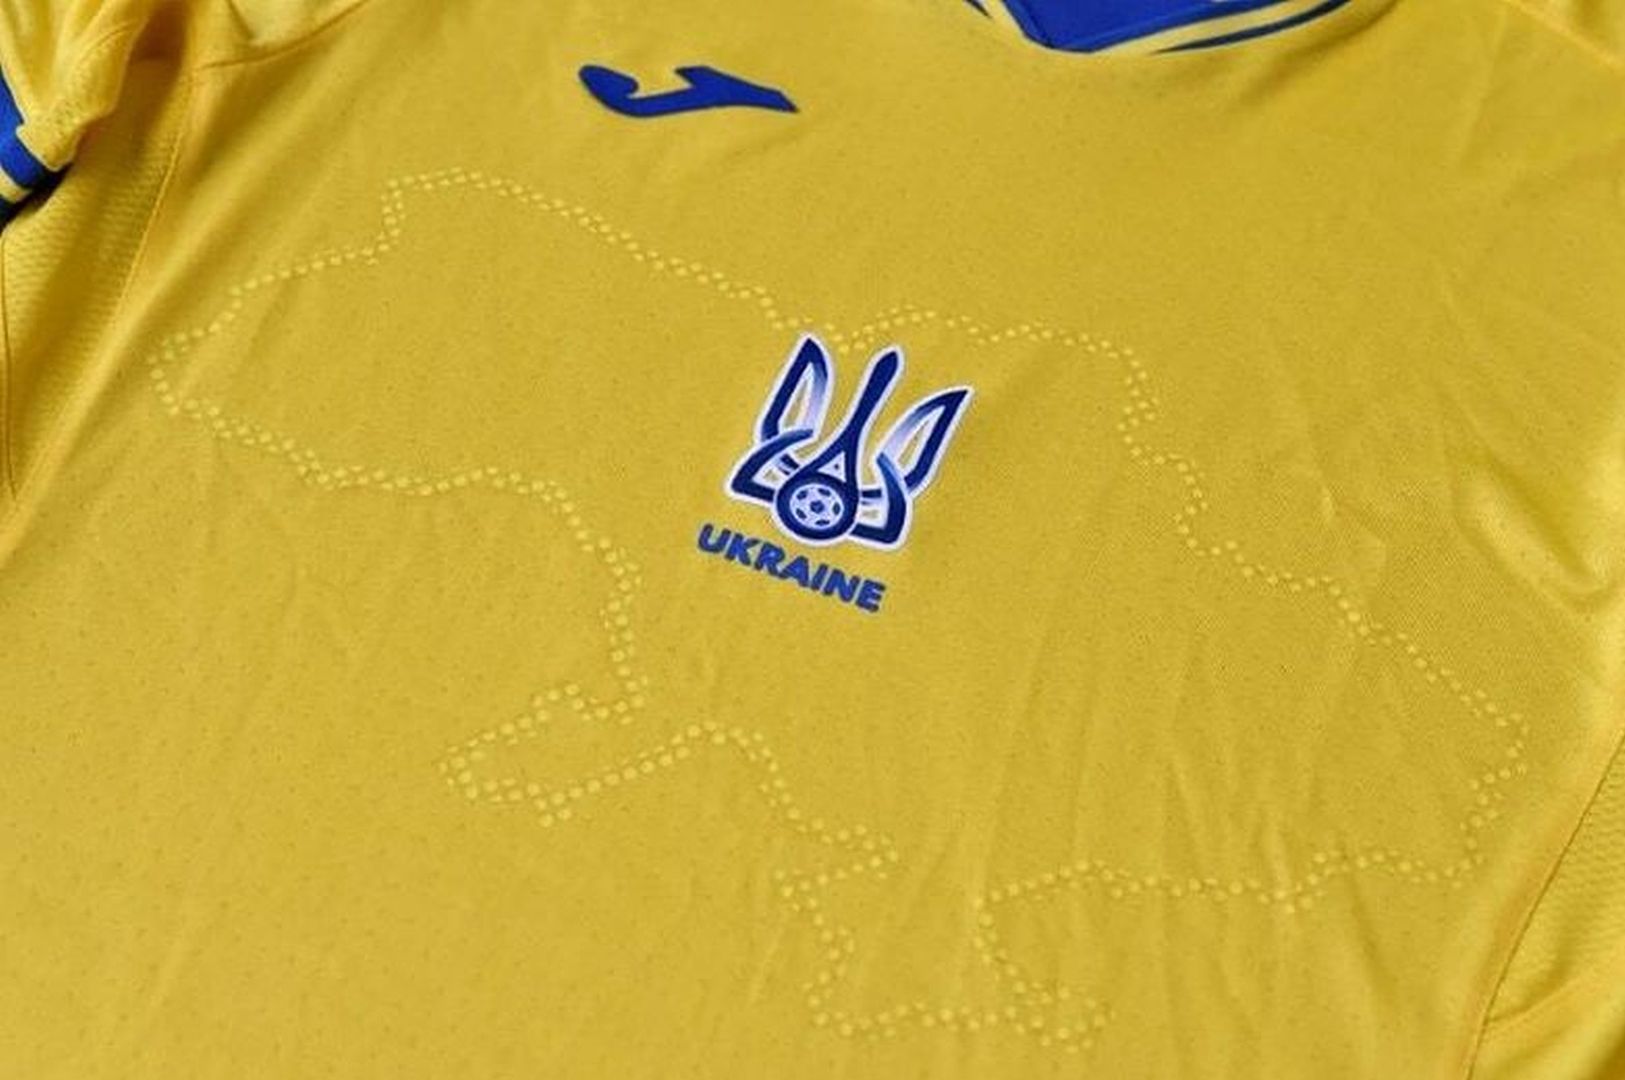 Euro 2020. Kontrowersje z koszulkami Ukrainców. Zdarzenie nabrało wydźwięku politycznego